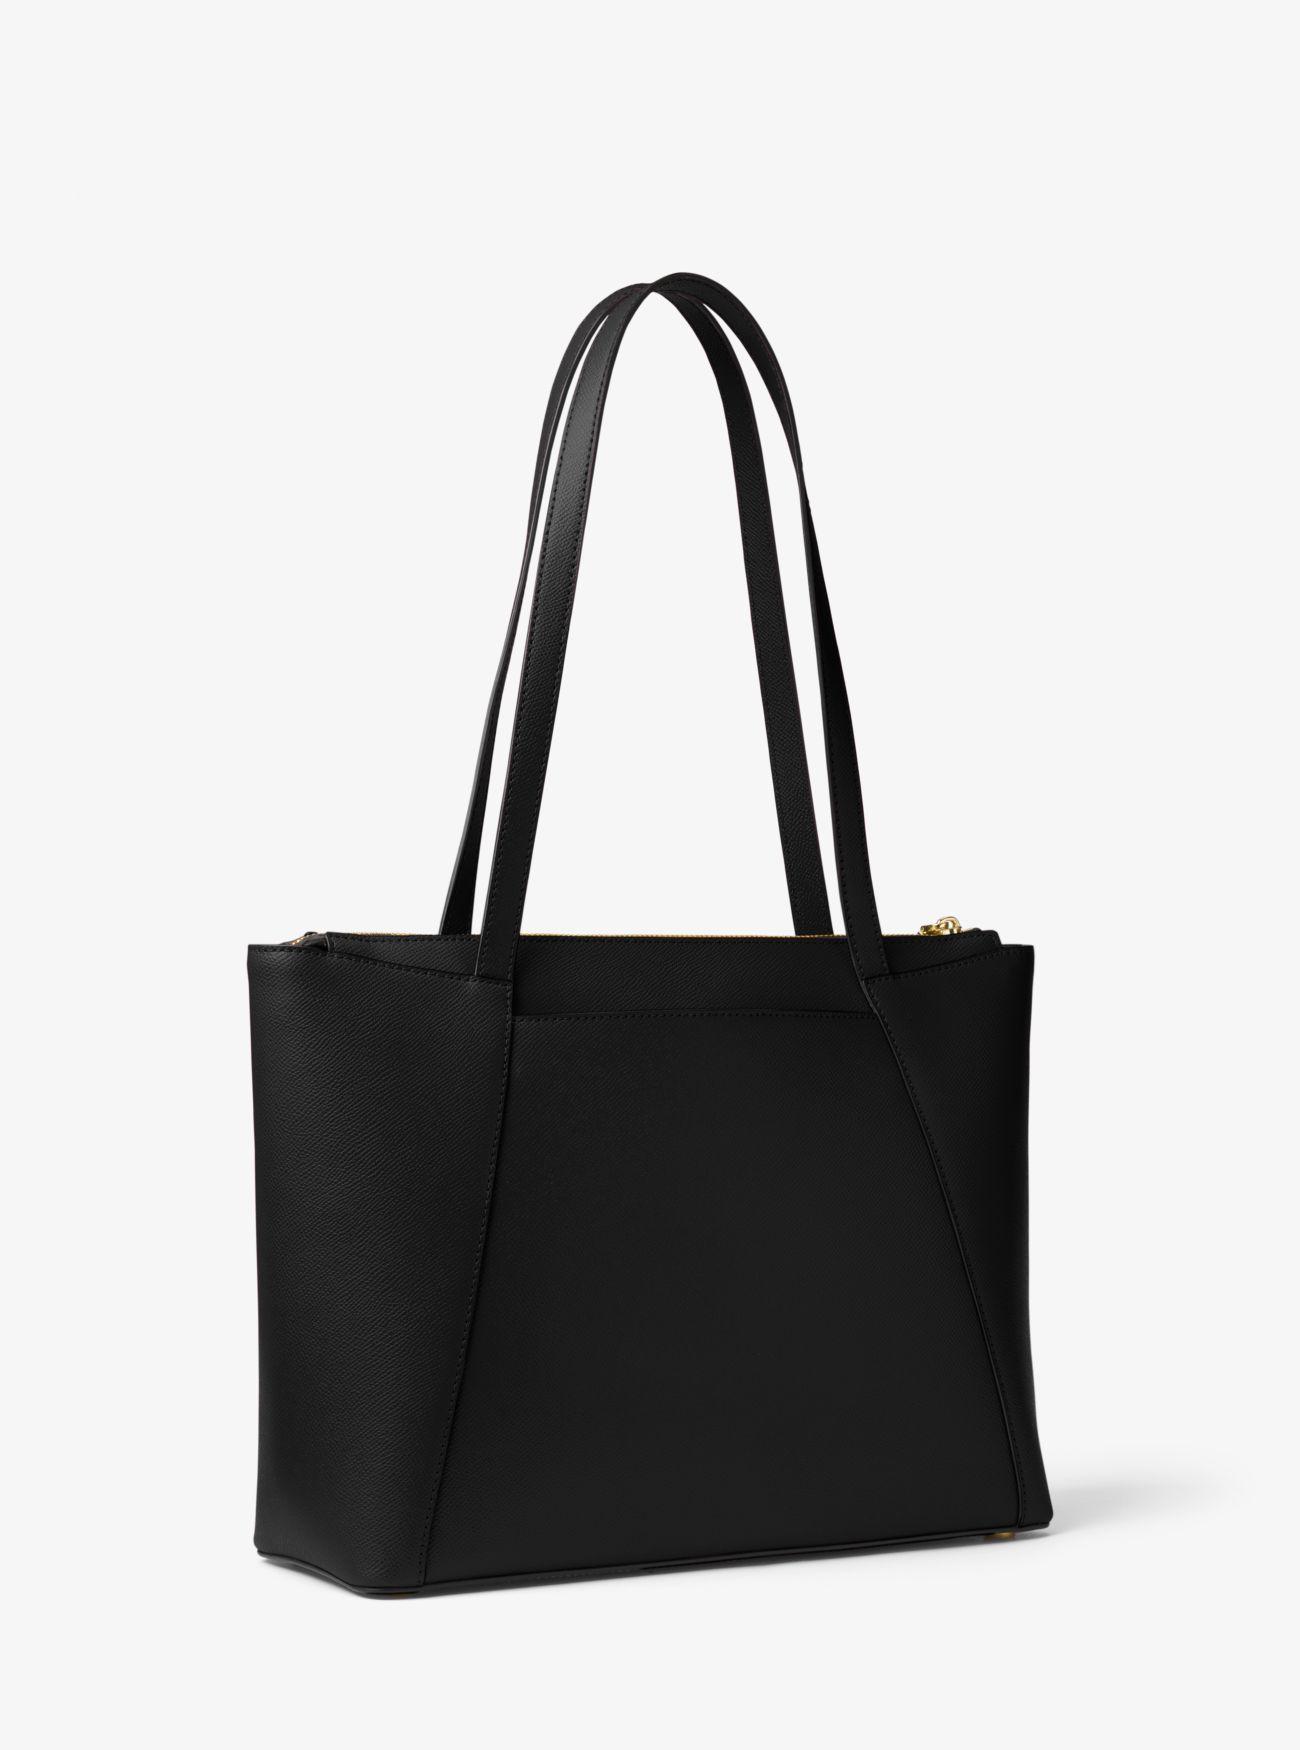 Michael Kors Maddie Medium Crossgrain Leather Tote Bag in Black | Lyst